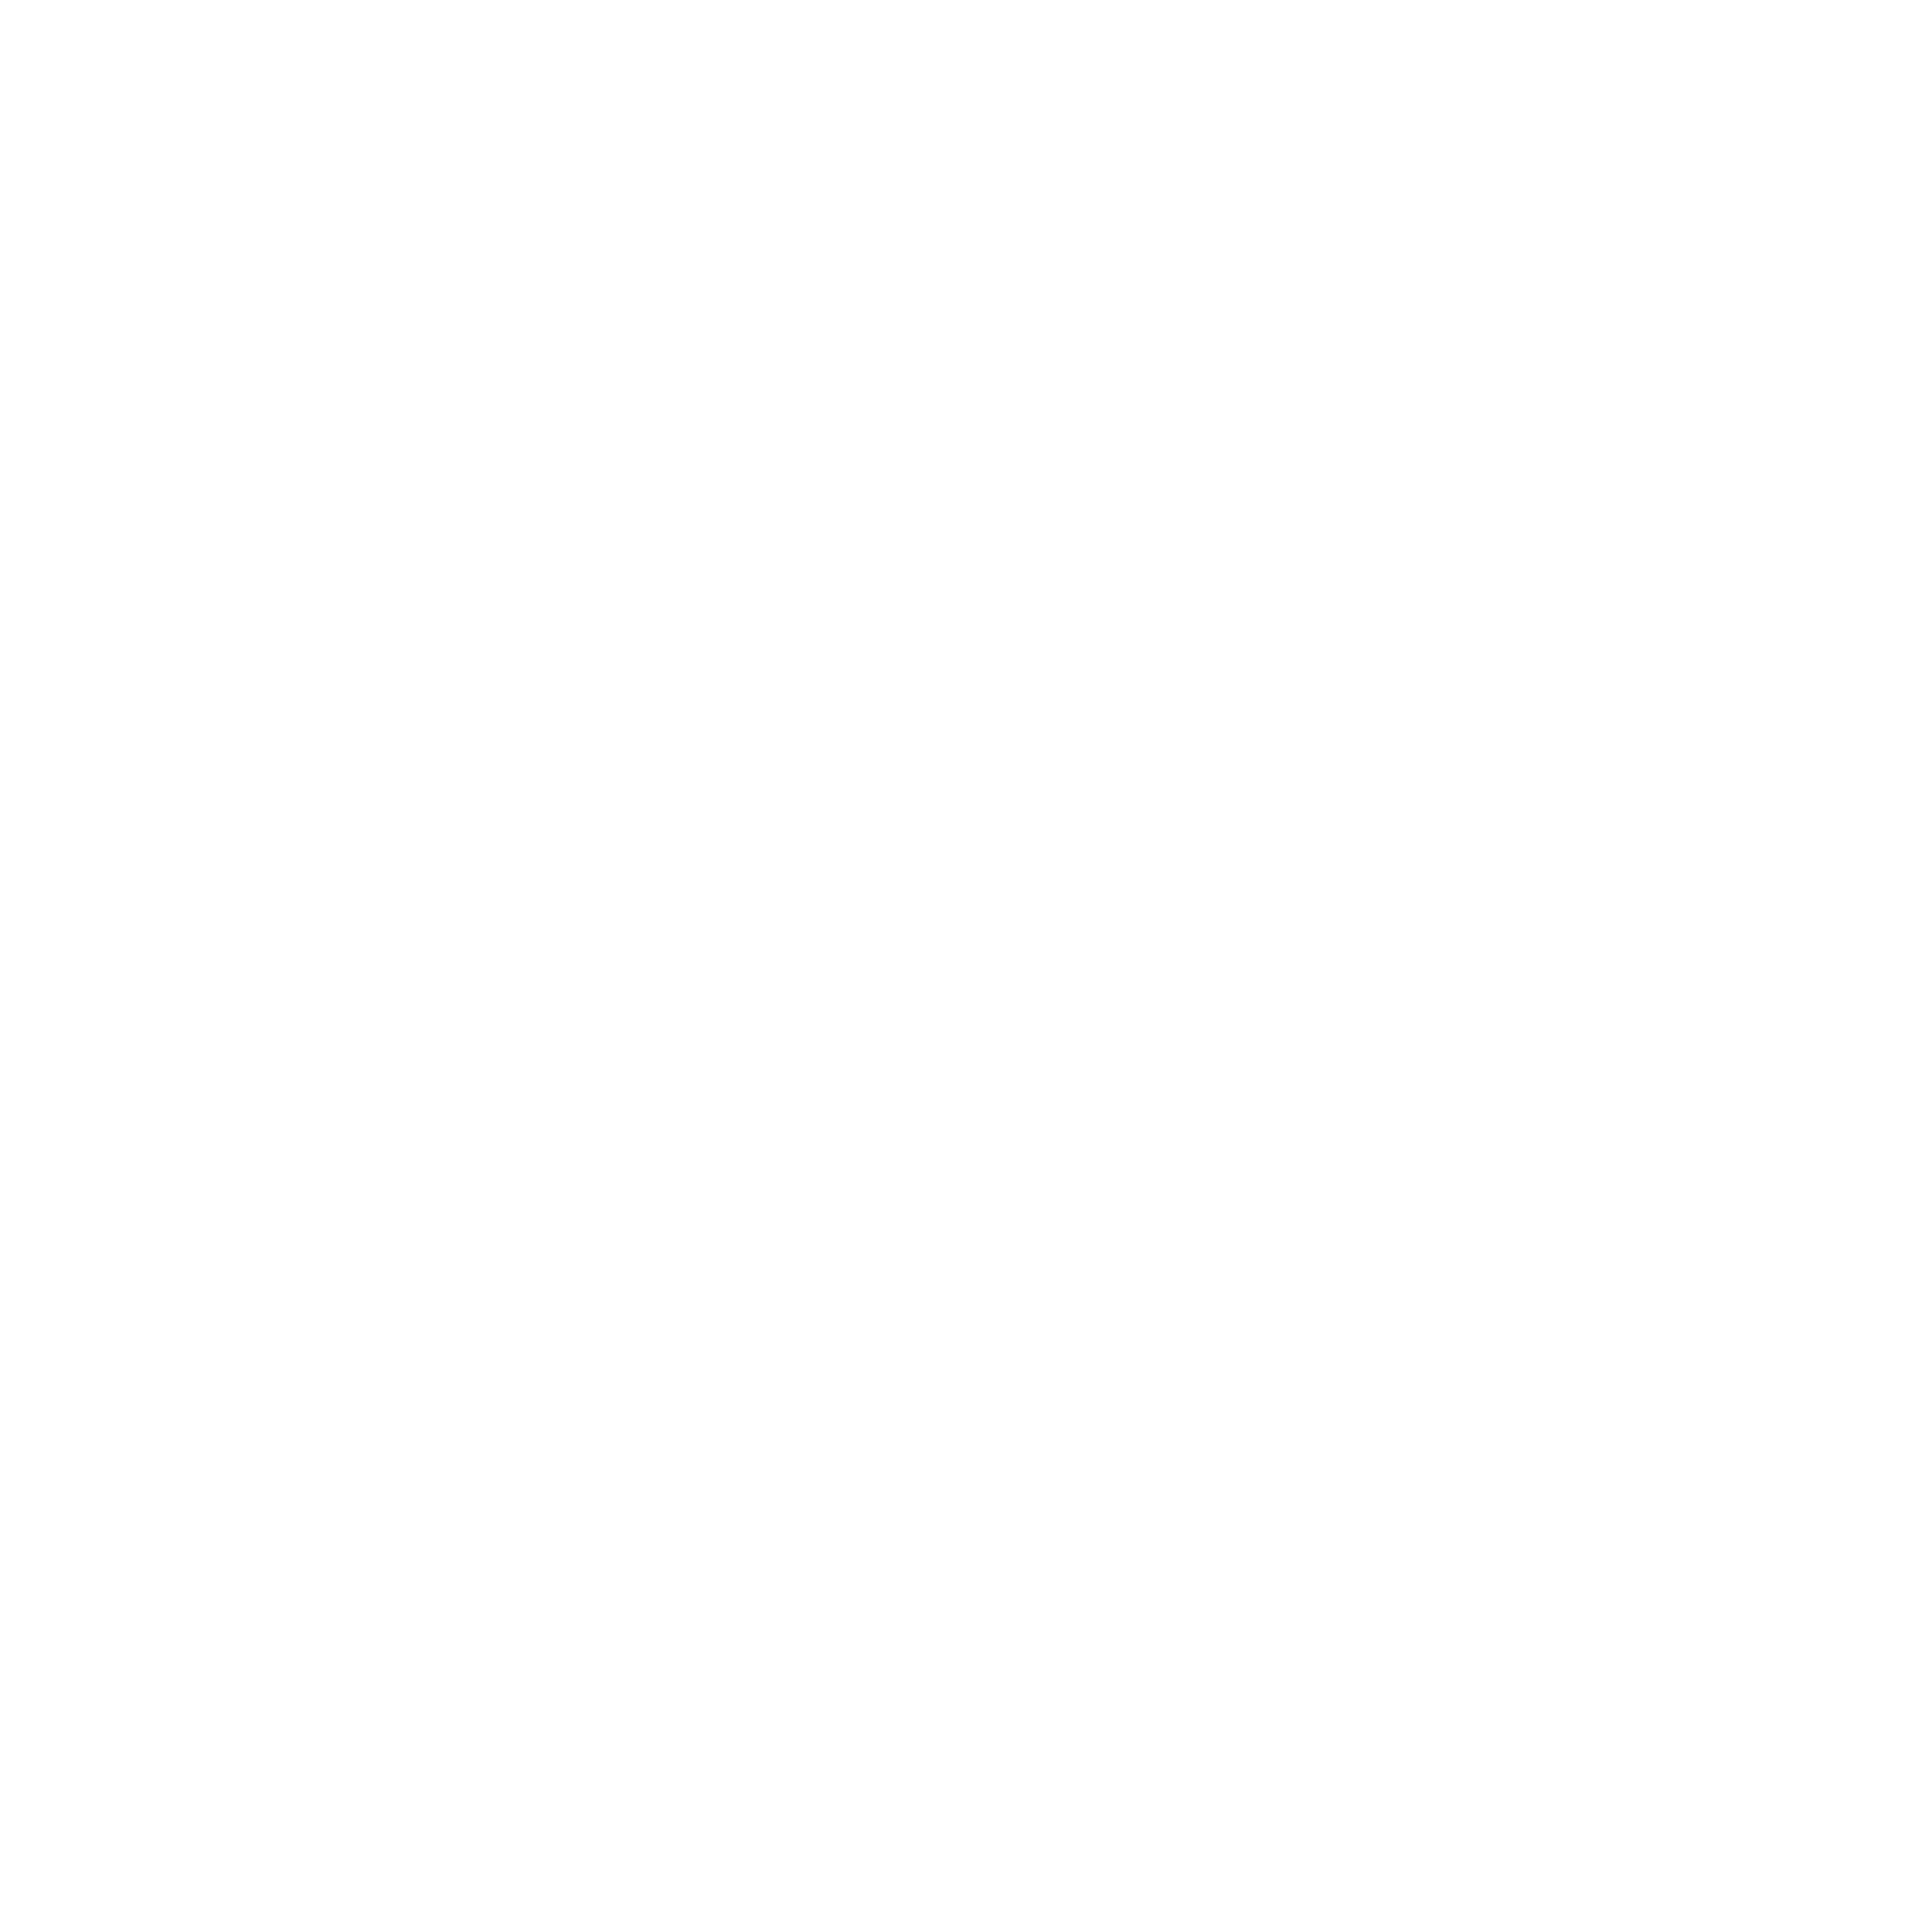 San Mateo County Fair 90th Anniversary